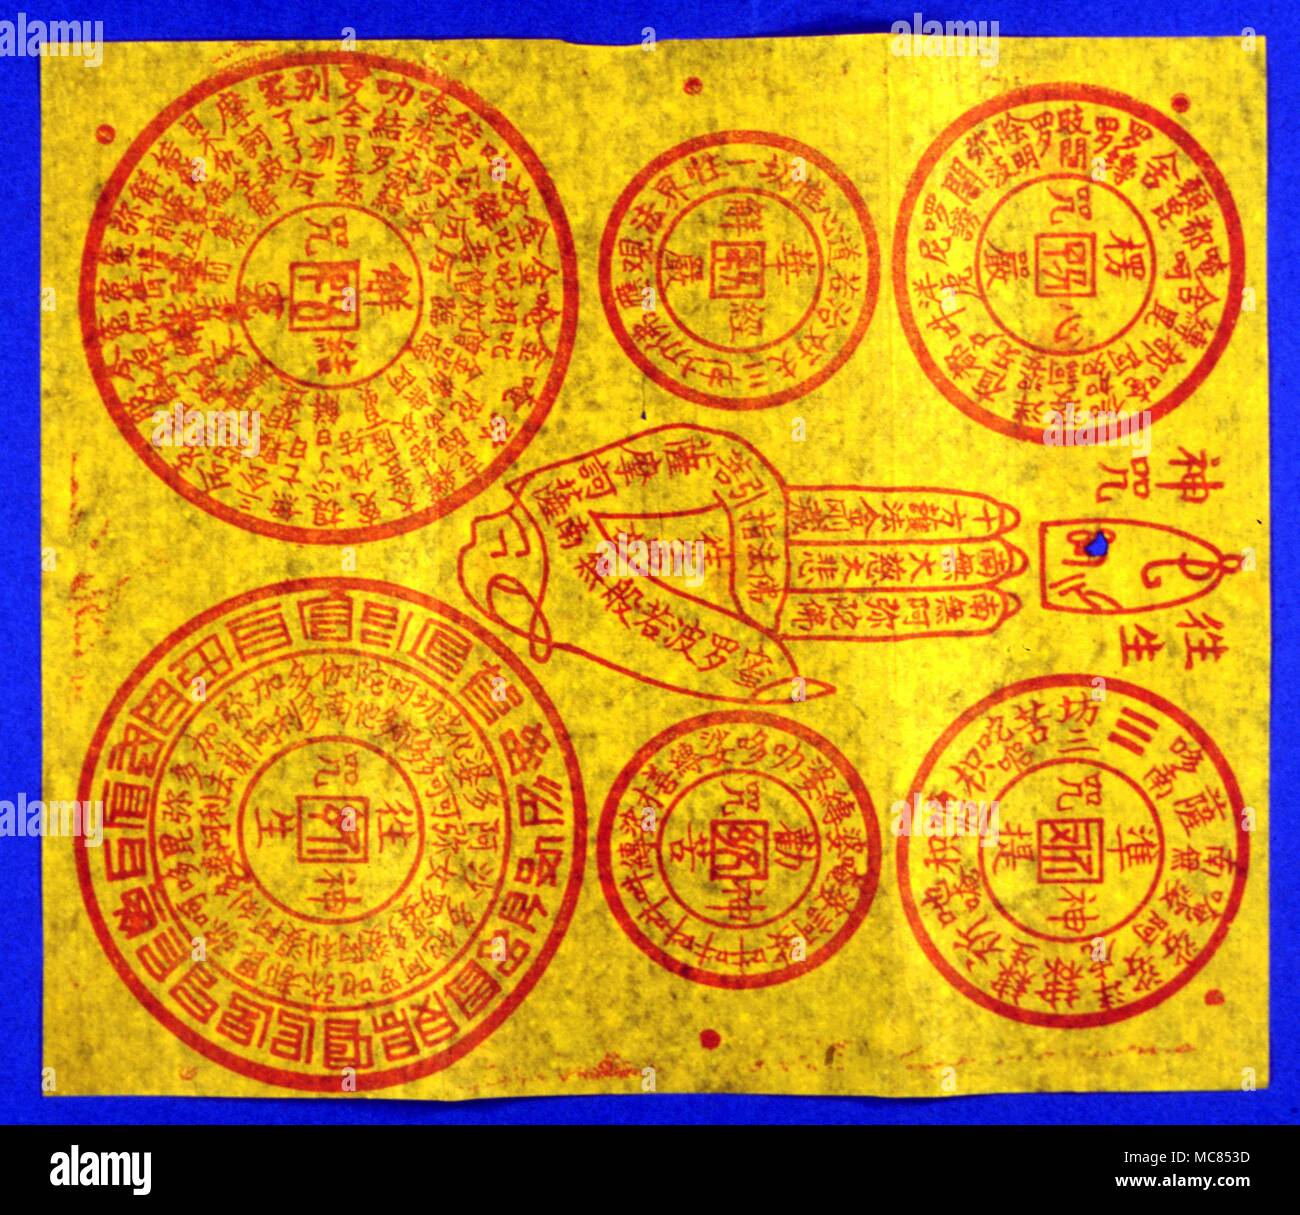 La mythologie chinoise papier jaune utilisé par les Bouddhistes et Taoïstes chinois. Ces charmes sont habituellement brûlé, les restes calcinés d'être mis dans l'eau, et d'ivresse. Banque D'Images